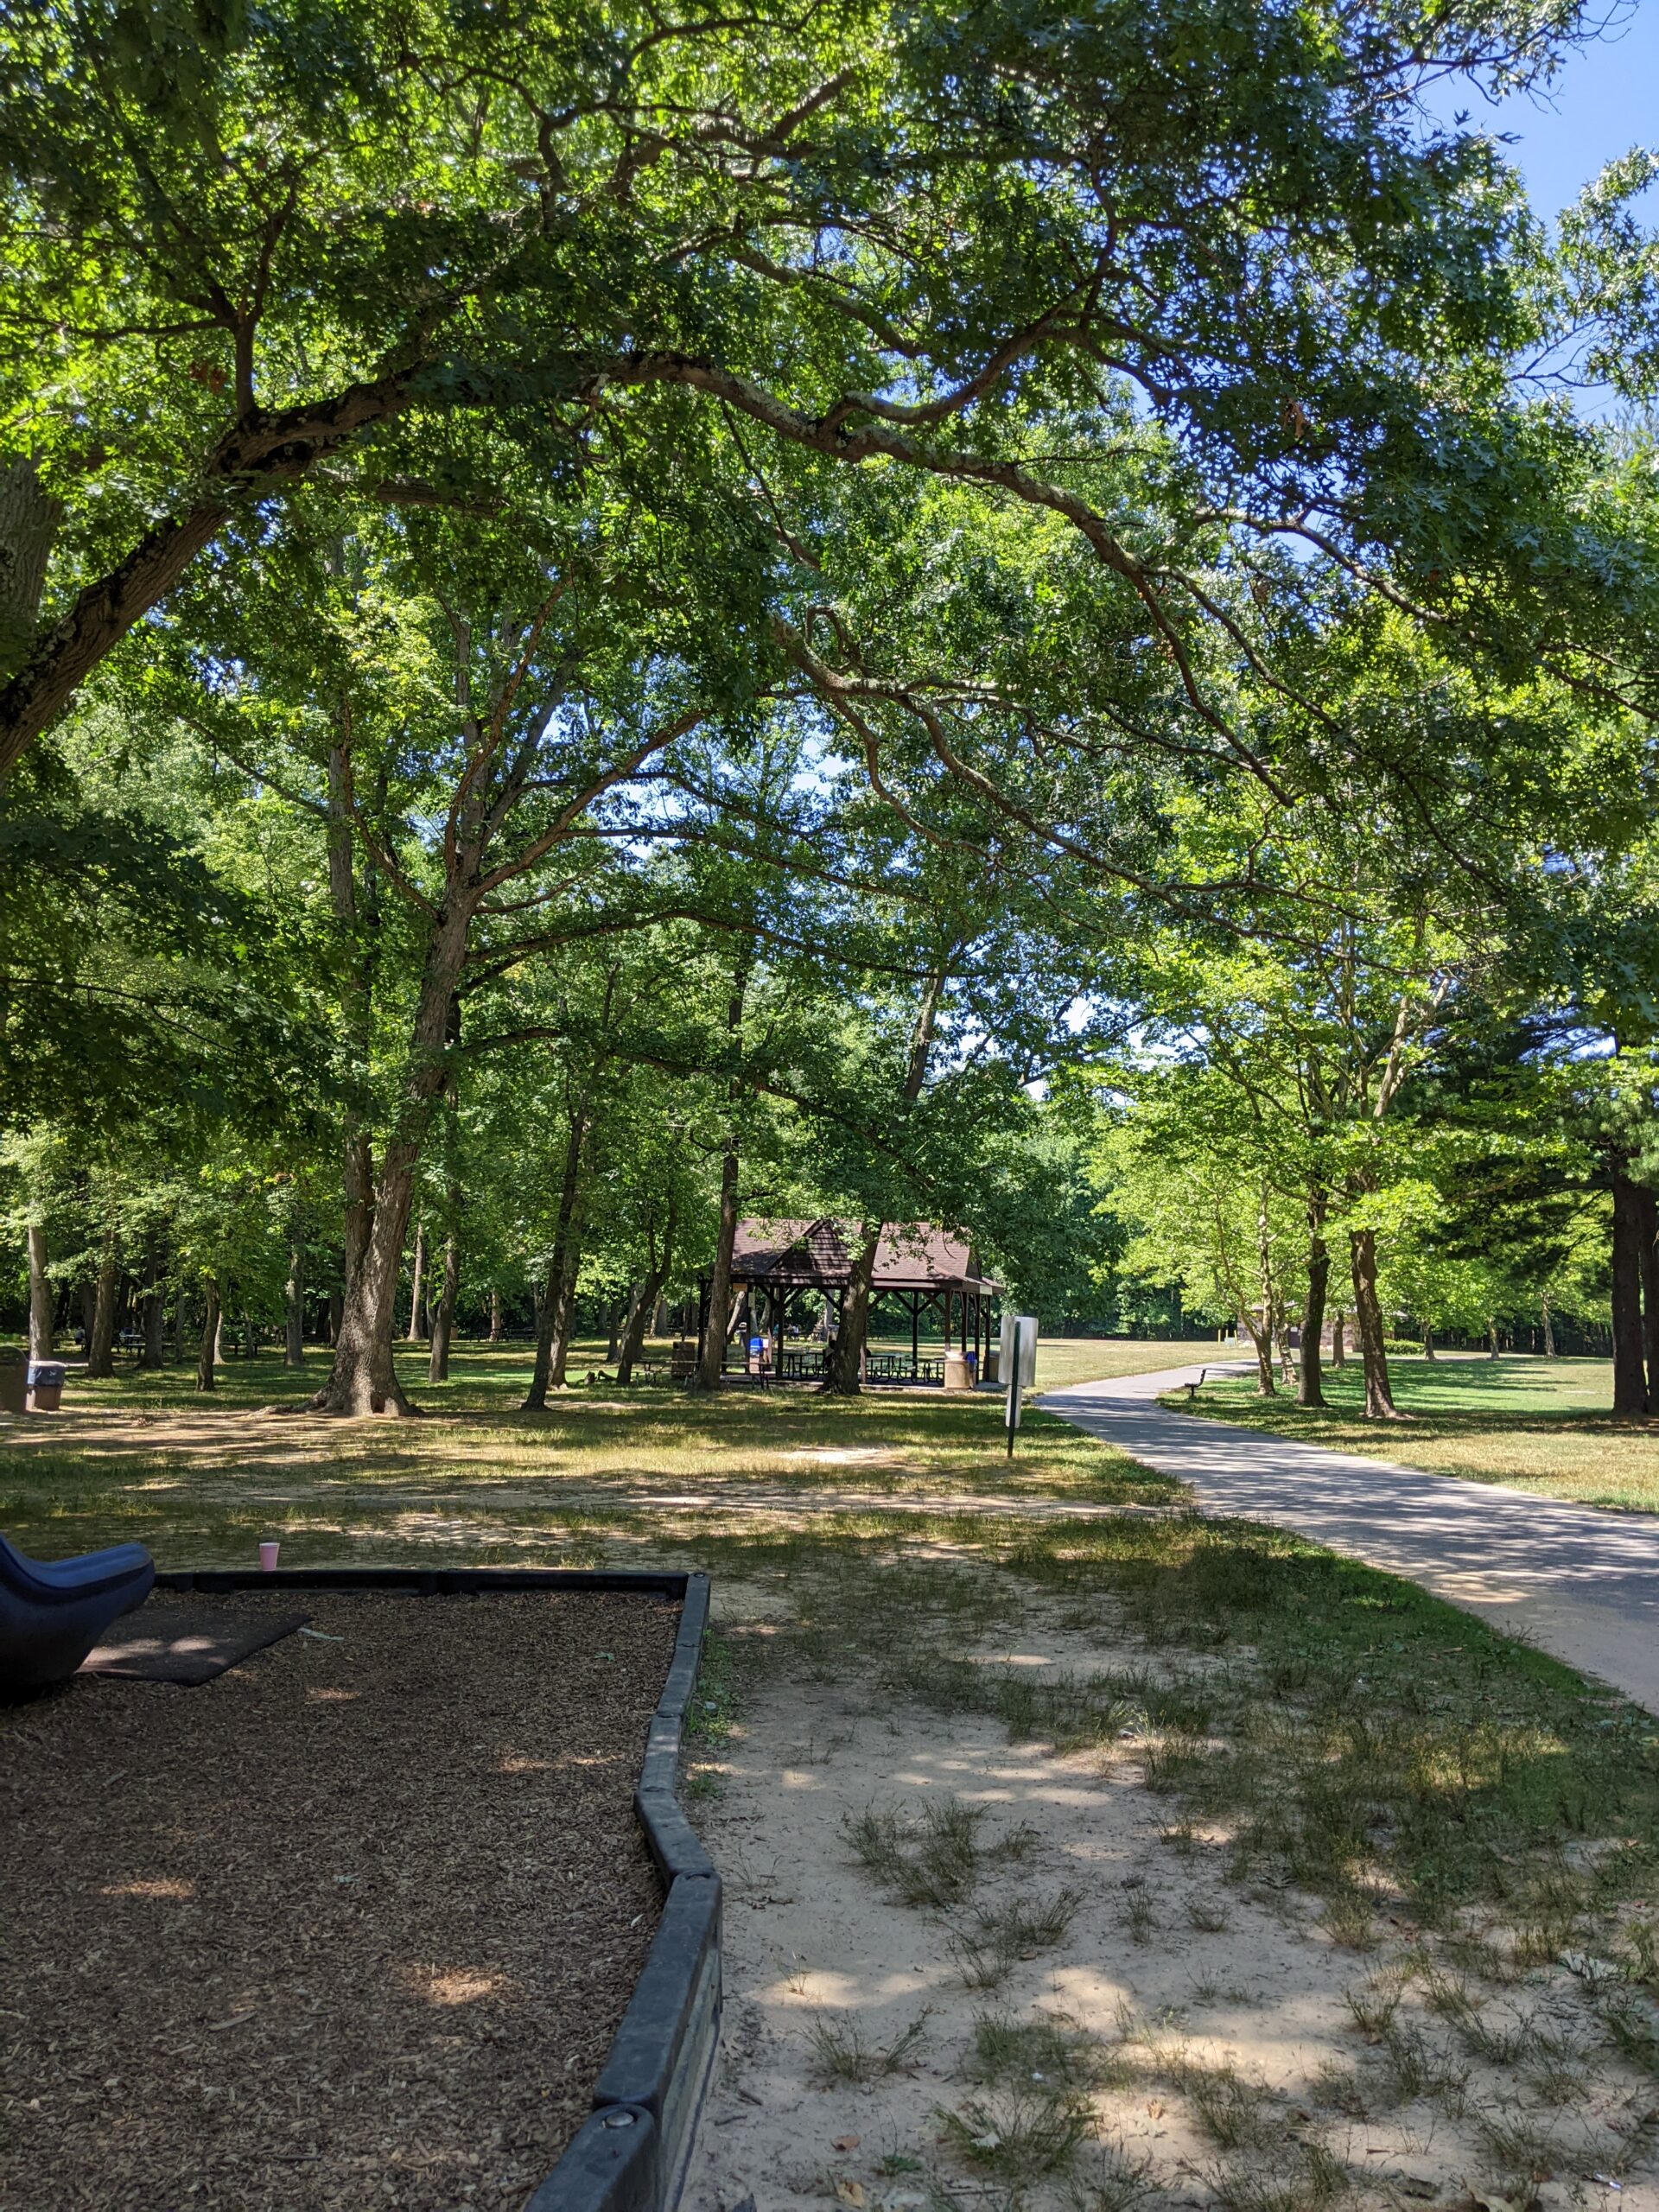 Veteran's Park in Hamilton Township NJ - Extras - shady walking path